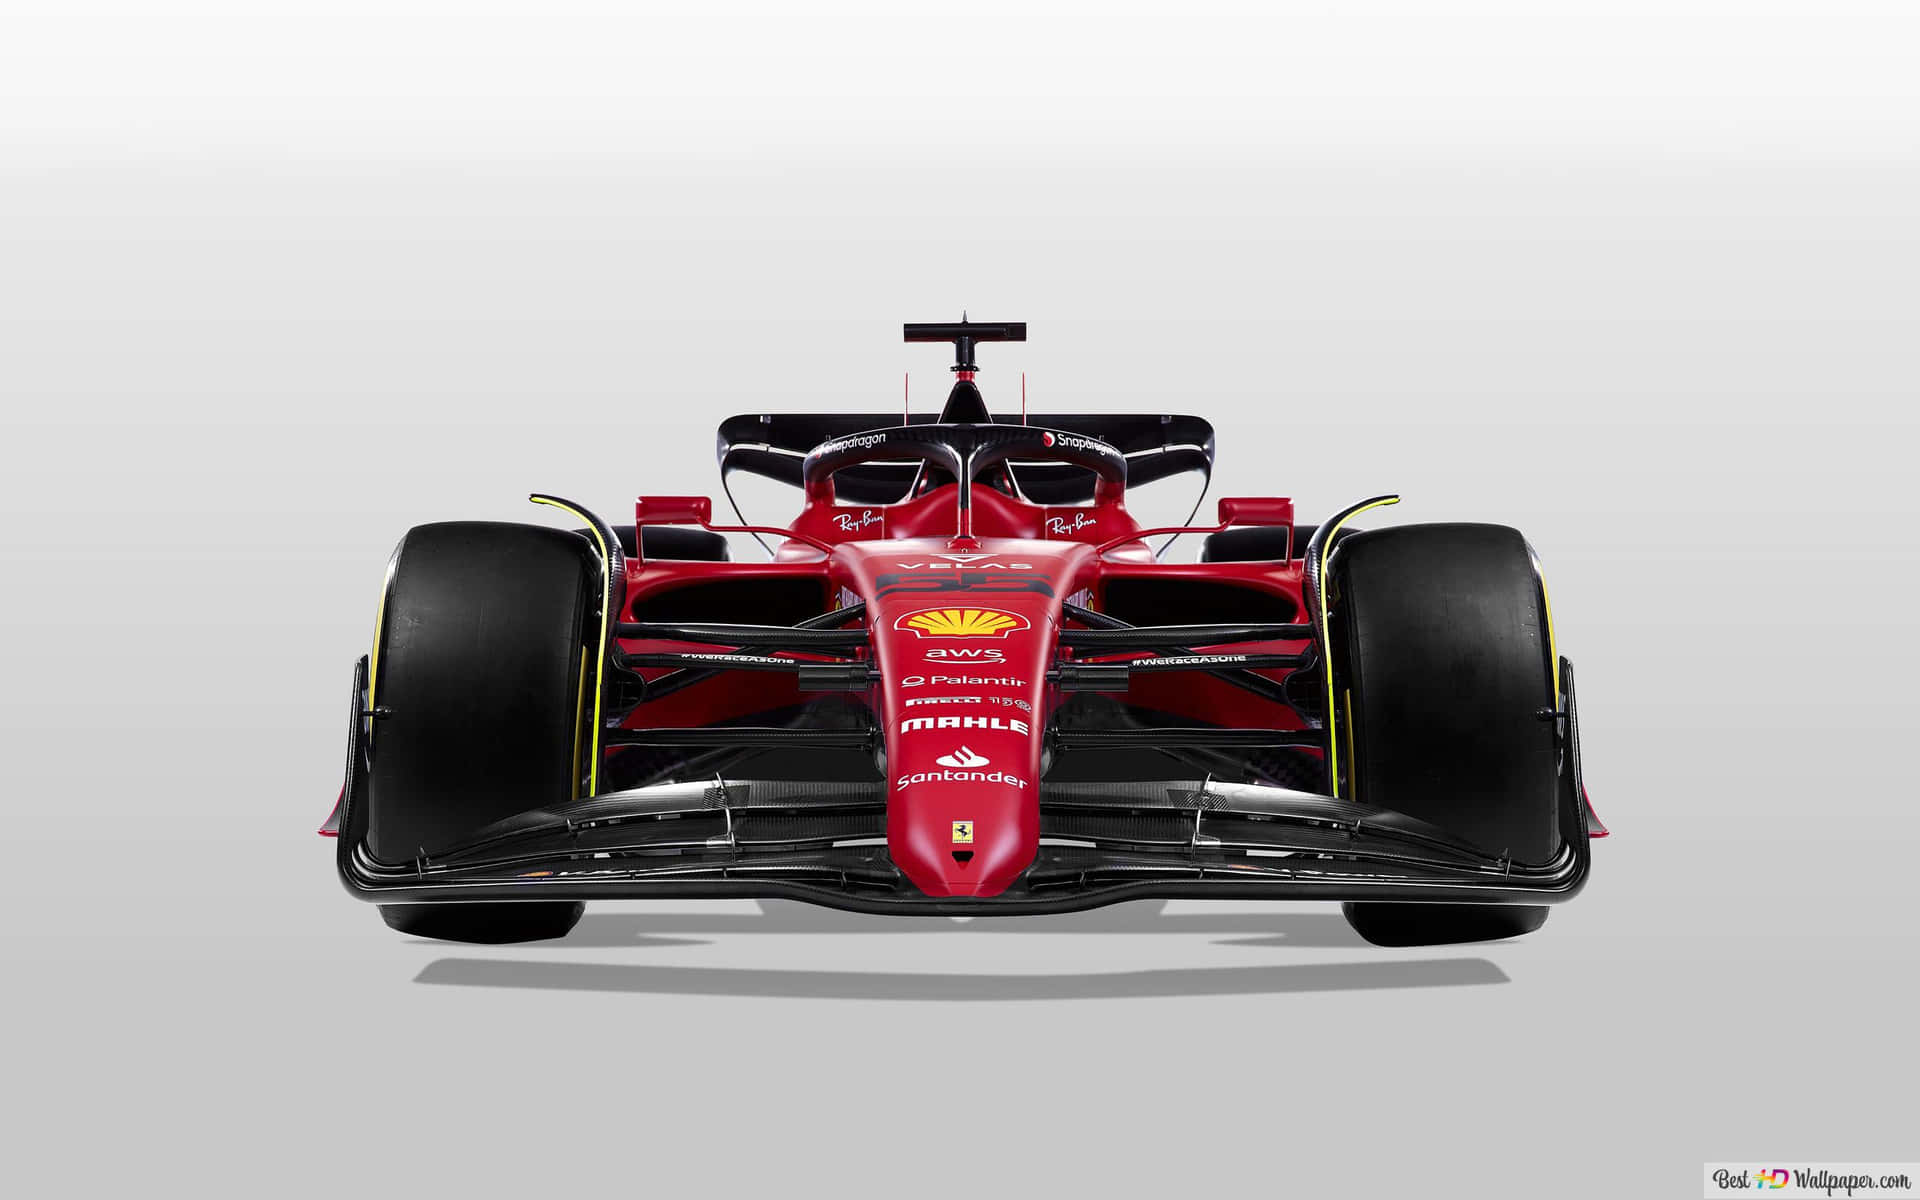 Ferrarivinner Kvinnornas F1 Bahrain Grand Prix. Wallpaper